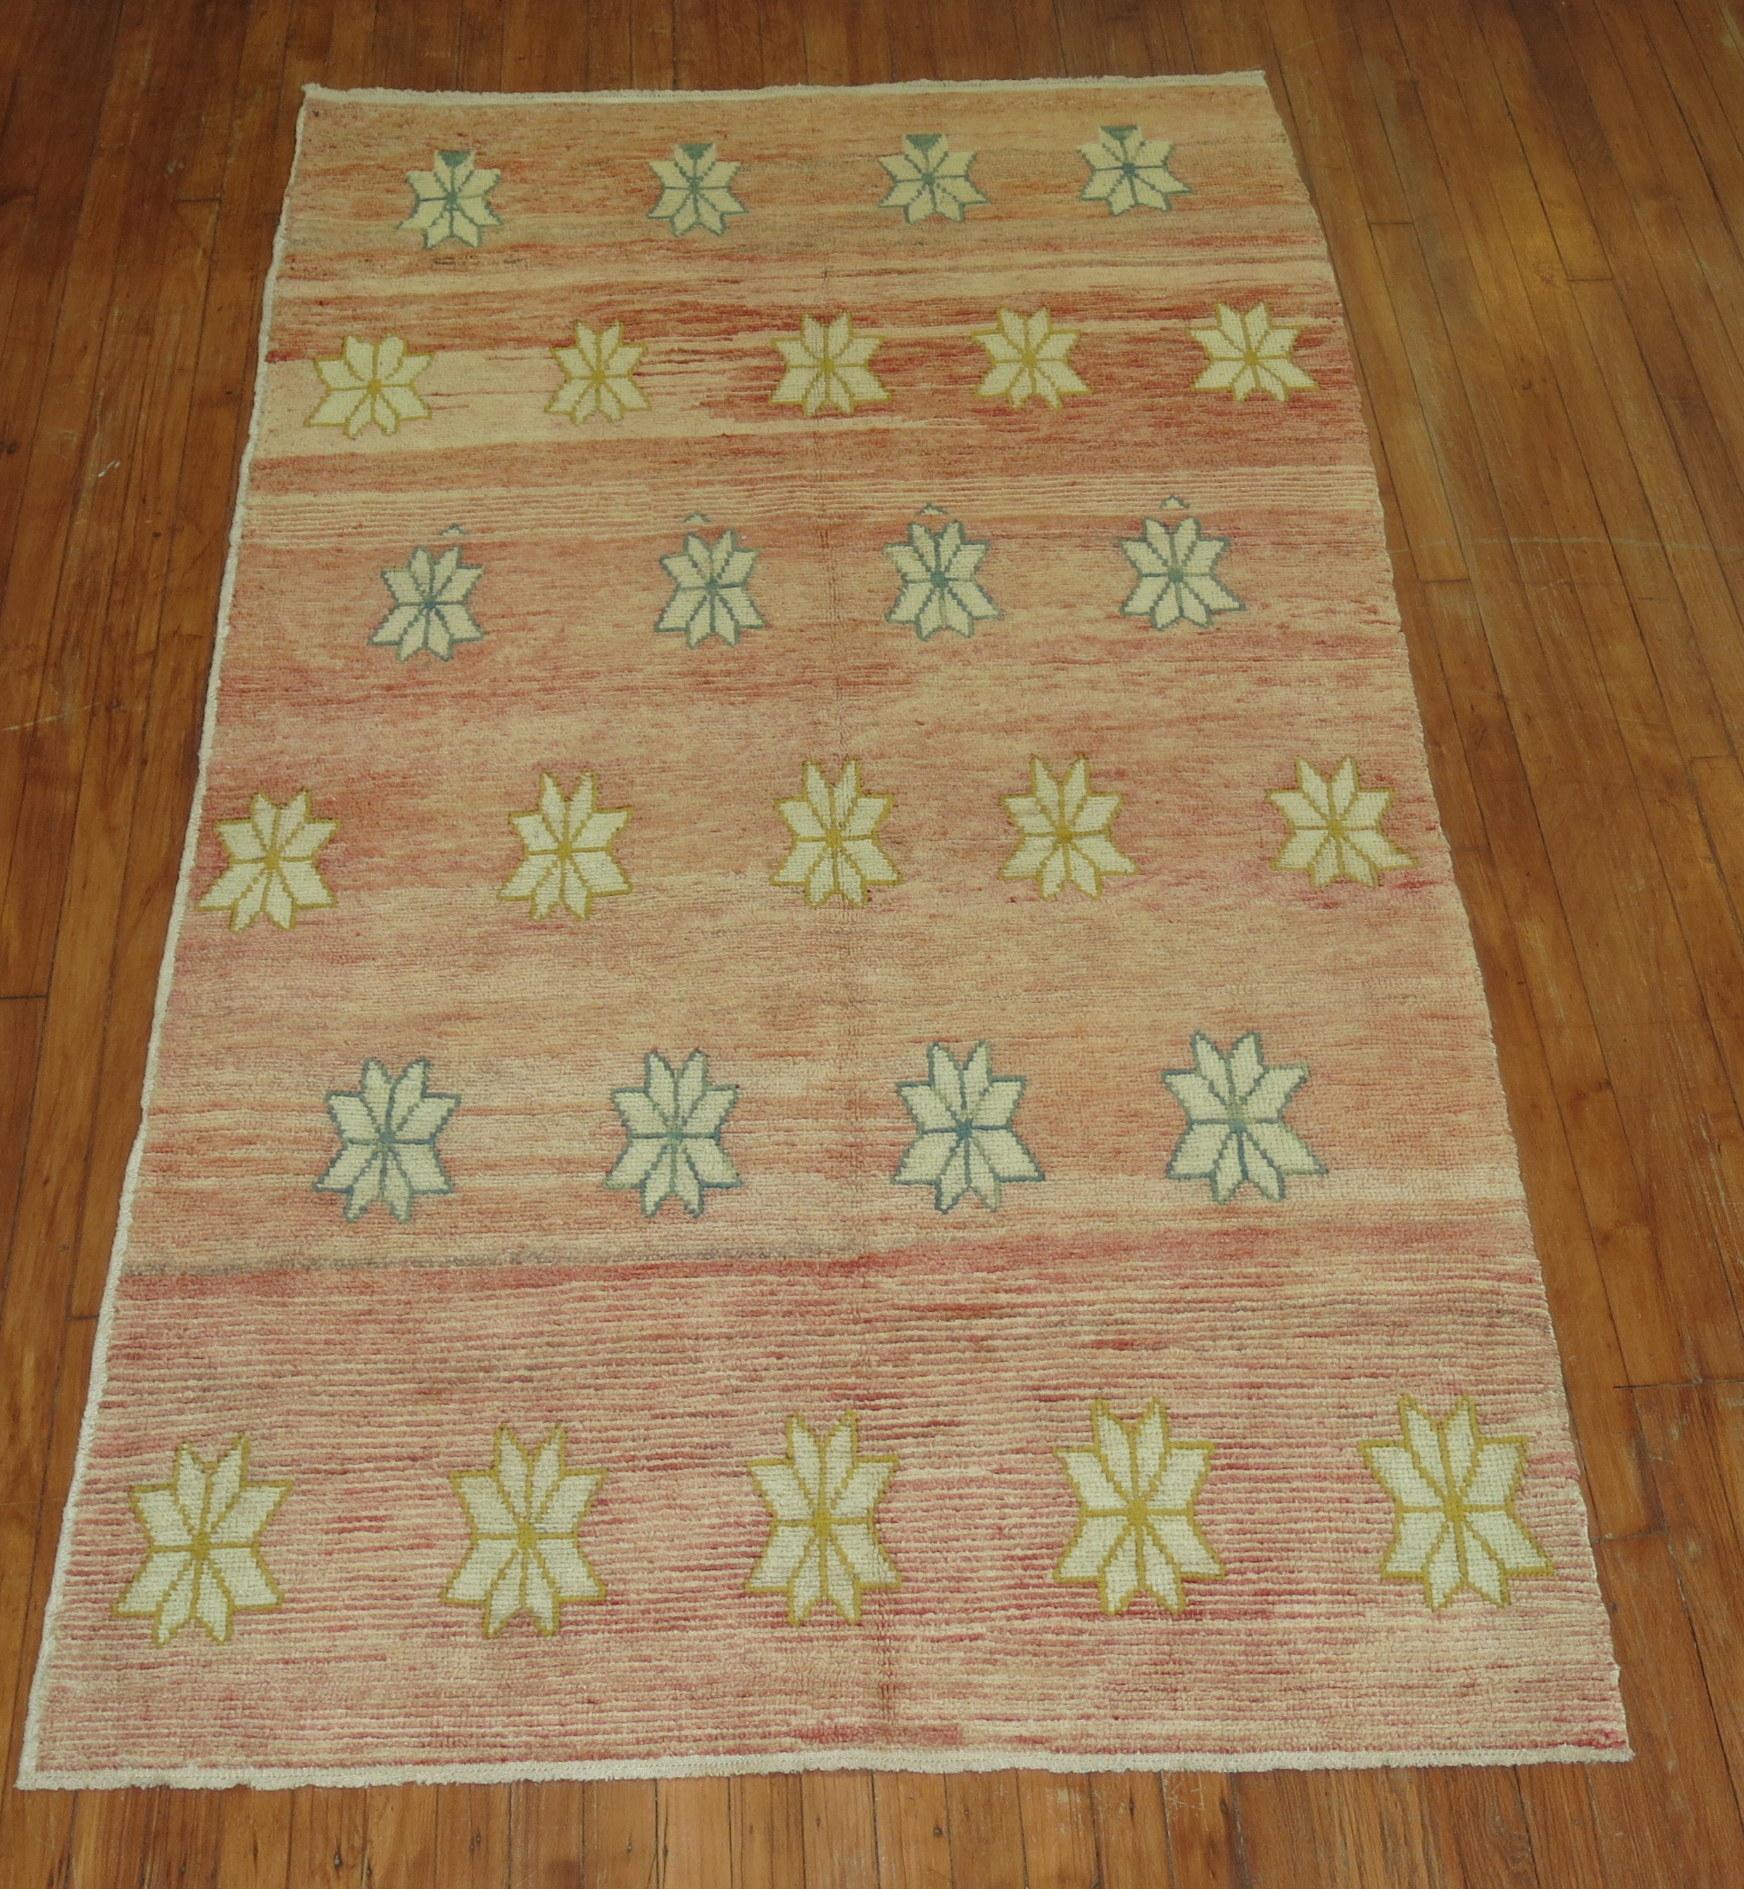 A mid-20th century border less vintage Turkish Konya rug.